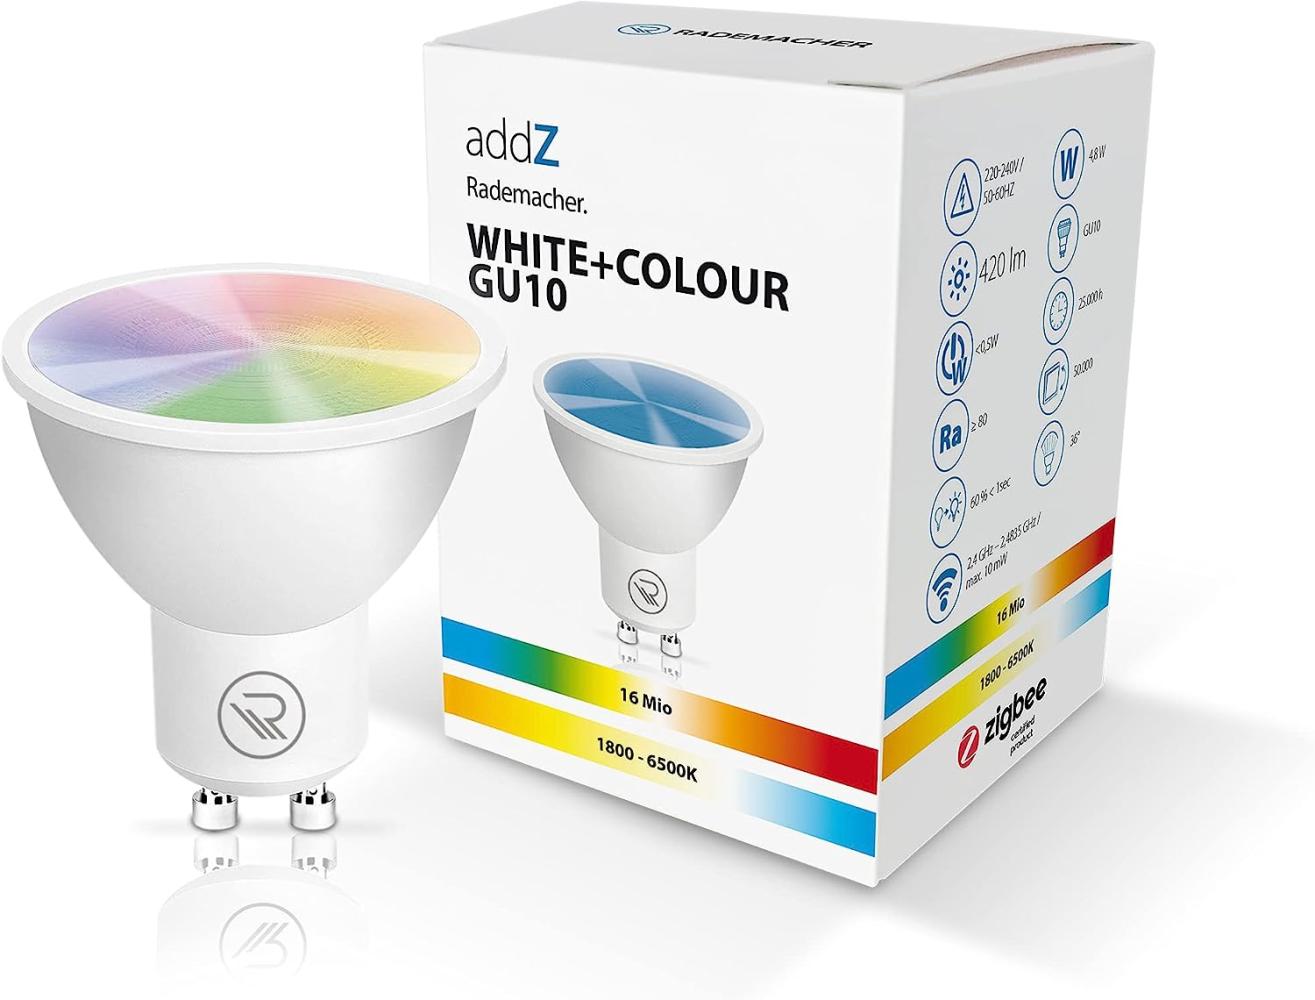 Rademacher addZ White + Colour GU10 LED Bild 1